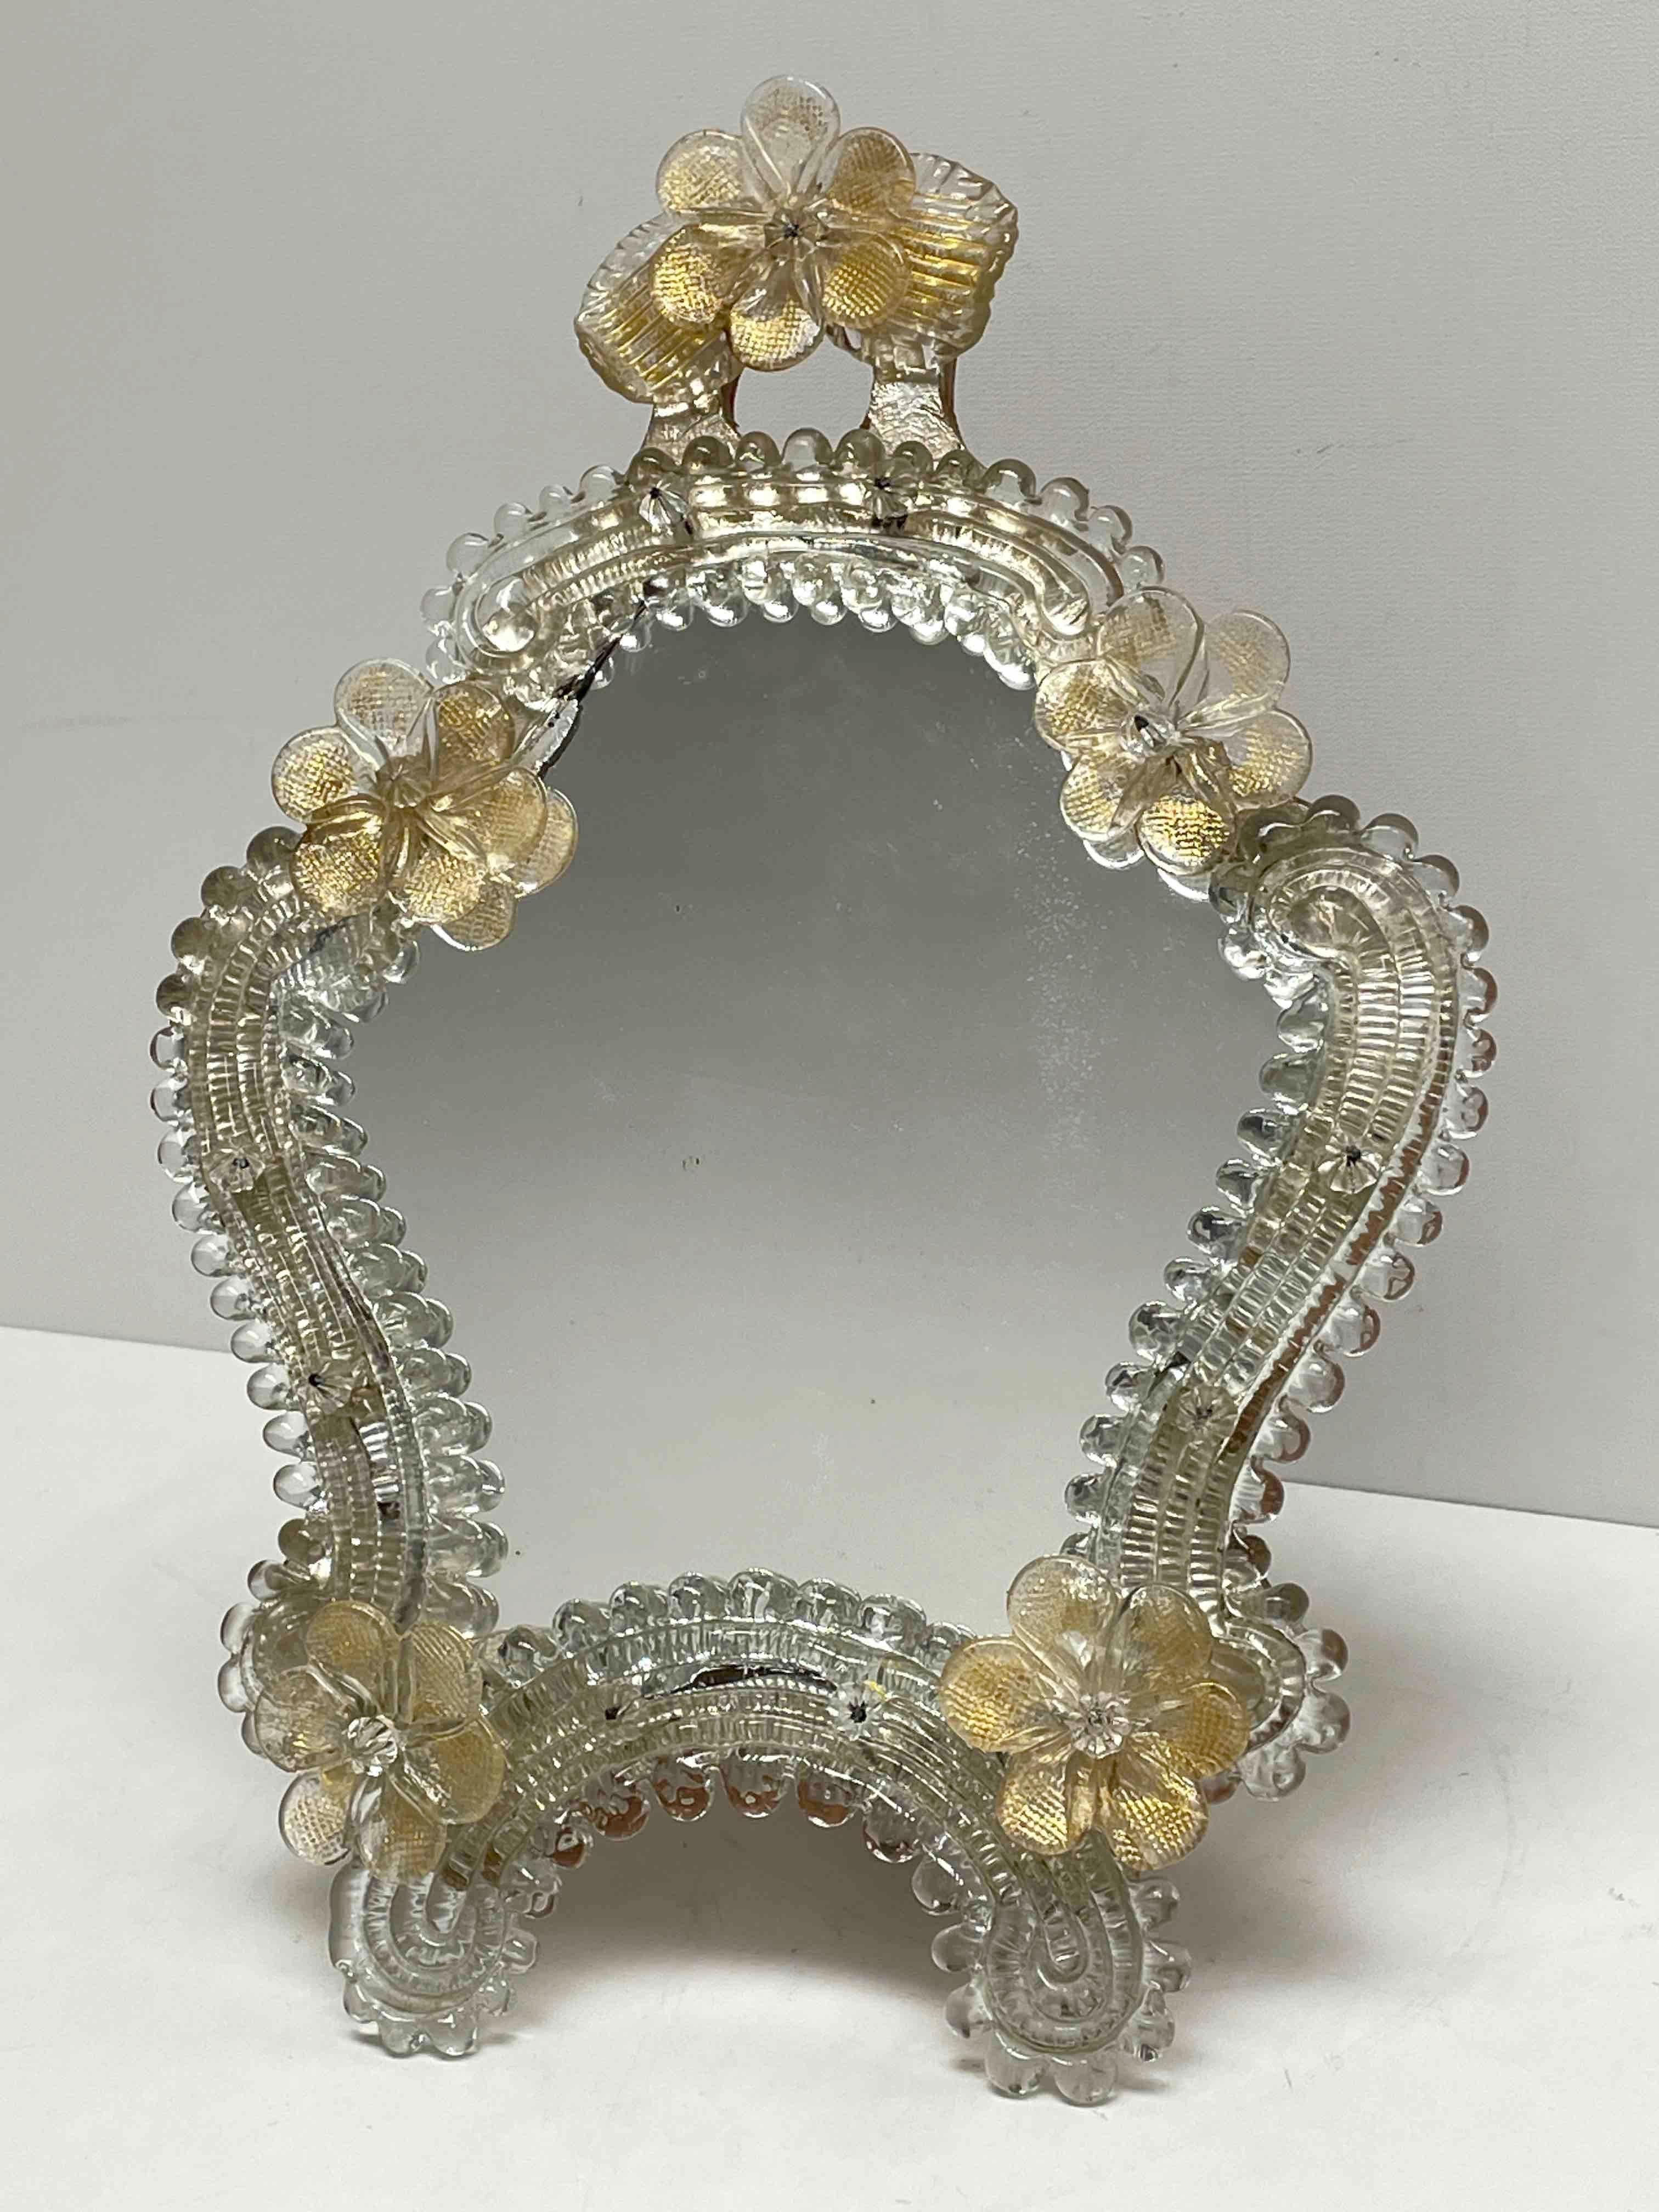 Magnifique miroir de coiffeuse en verre de Murano entouré de fleurs en écailles d'or transparentes faites à la main. Peut être utilisé comme miroir mural ou miroir debout. Avec des signes mineurs d'usure comme on peut s'y attendre, dus à l'âge et à